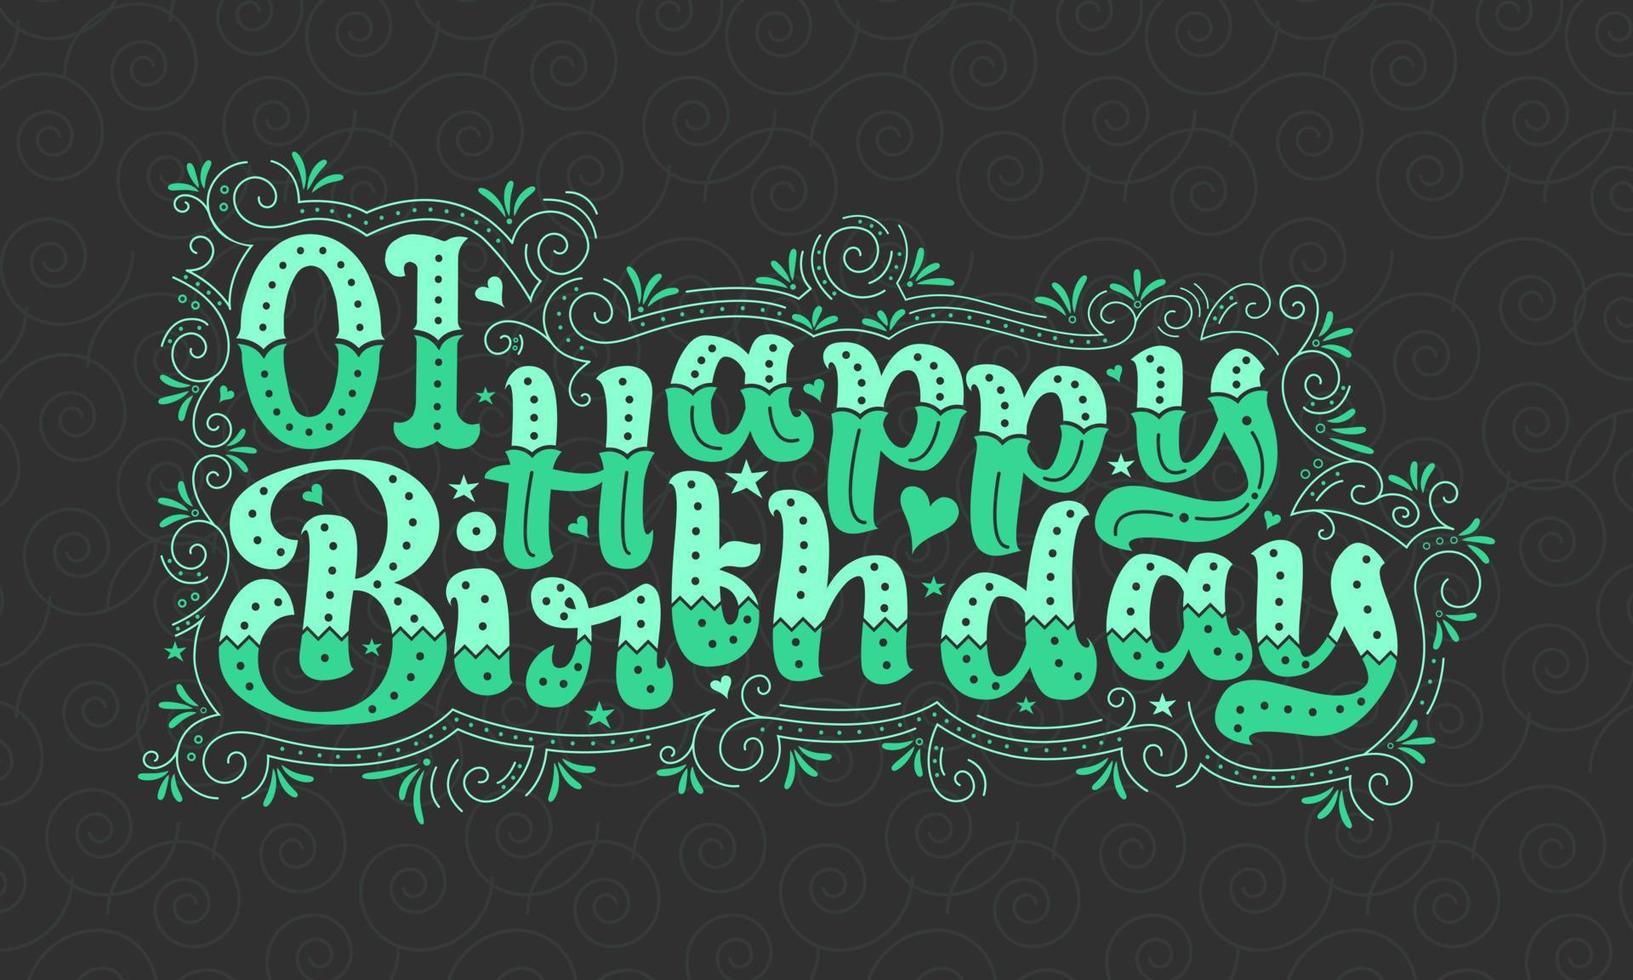 Primeras letras de feliz cumpleaños, hermoso diseño tipográfico de cumpleaños de 1 año con puntos verdes, líneas y hojas. vector